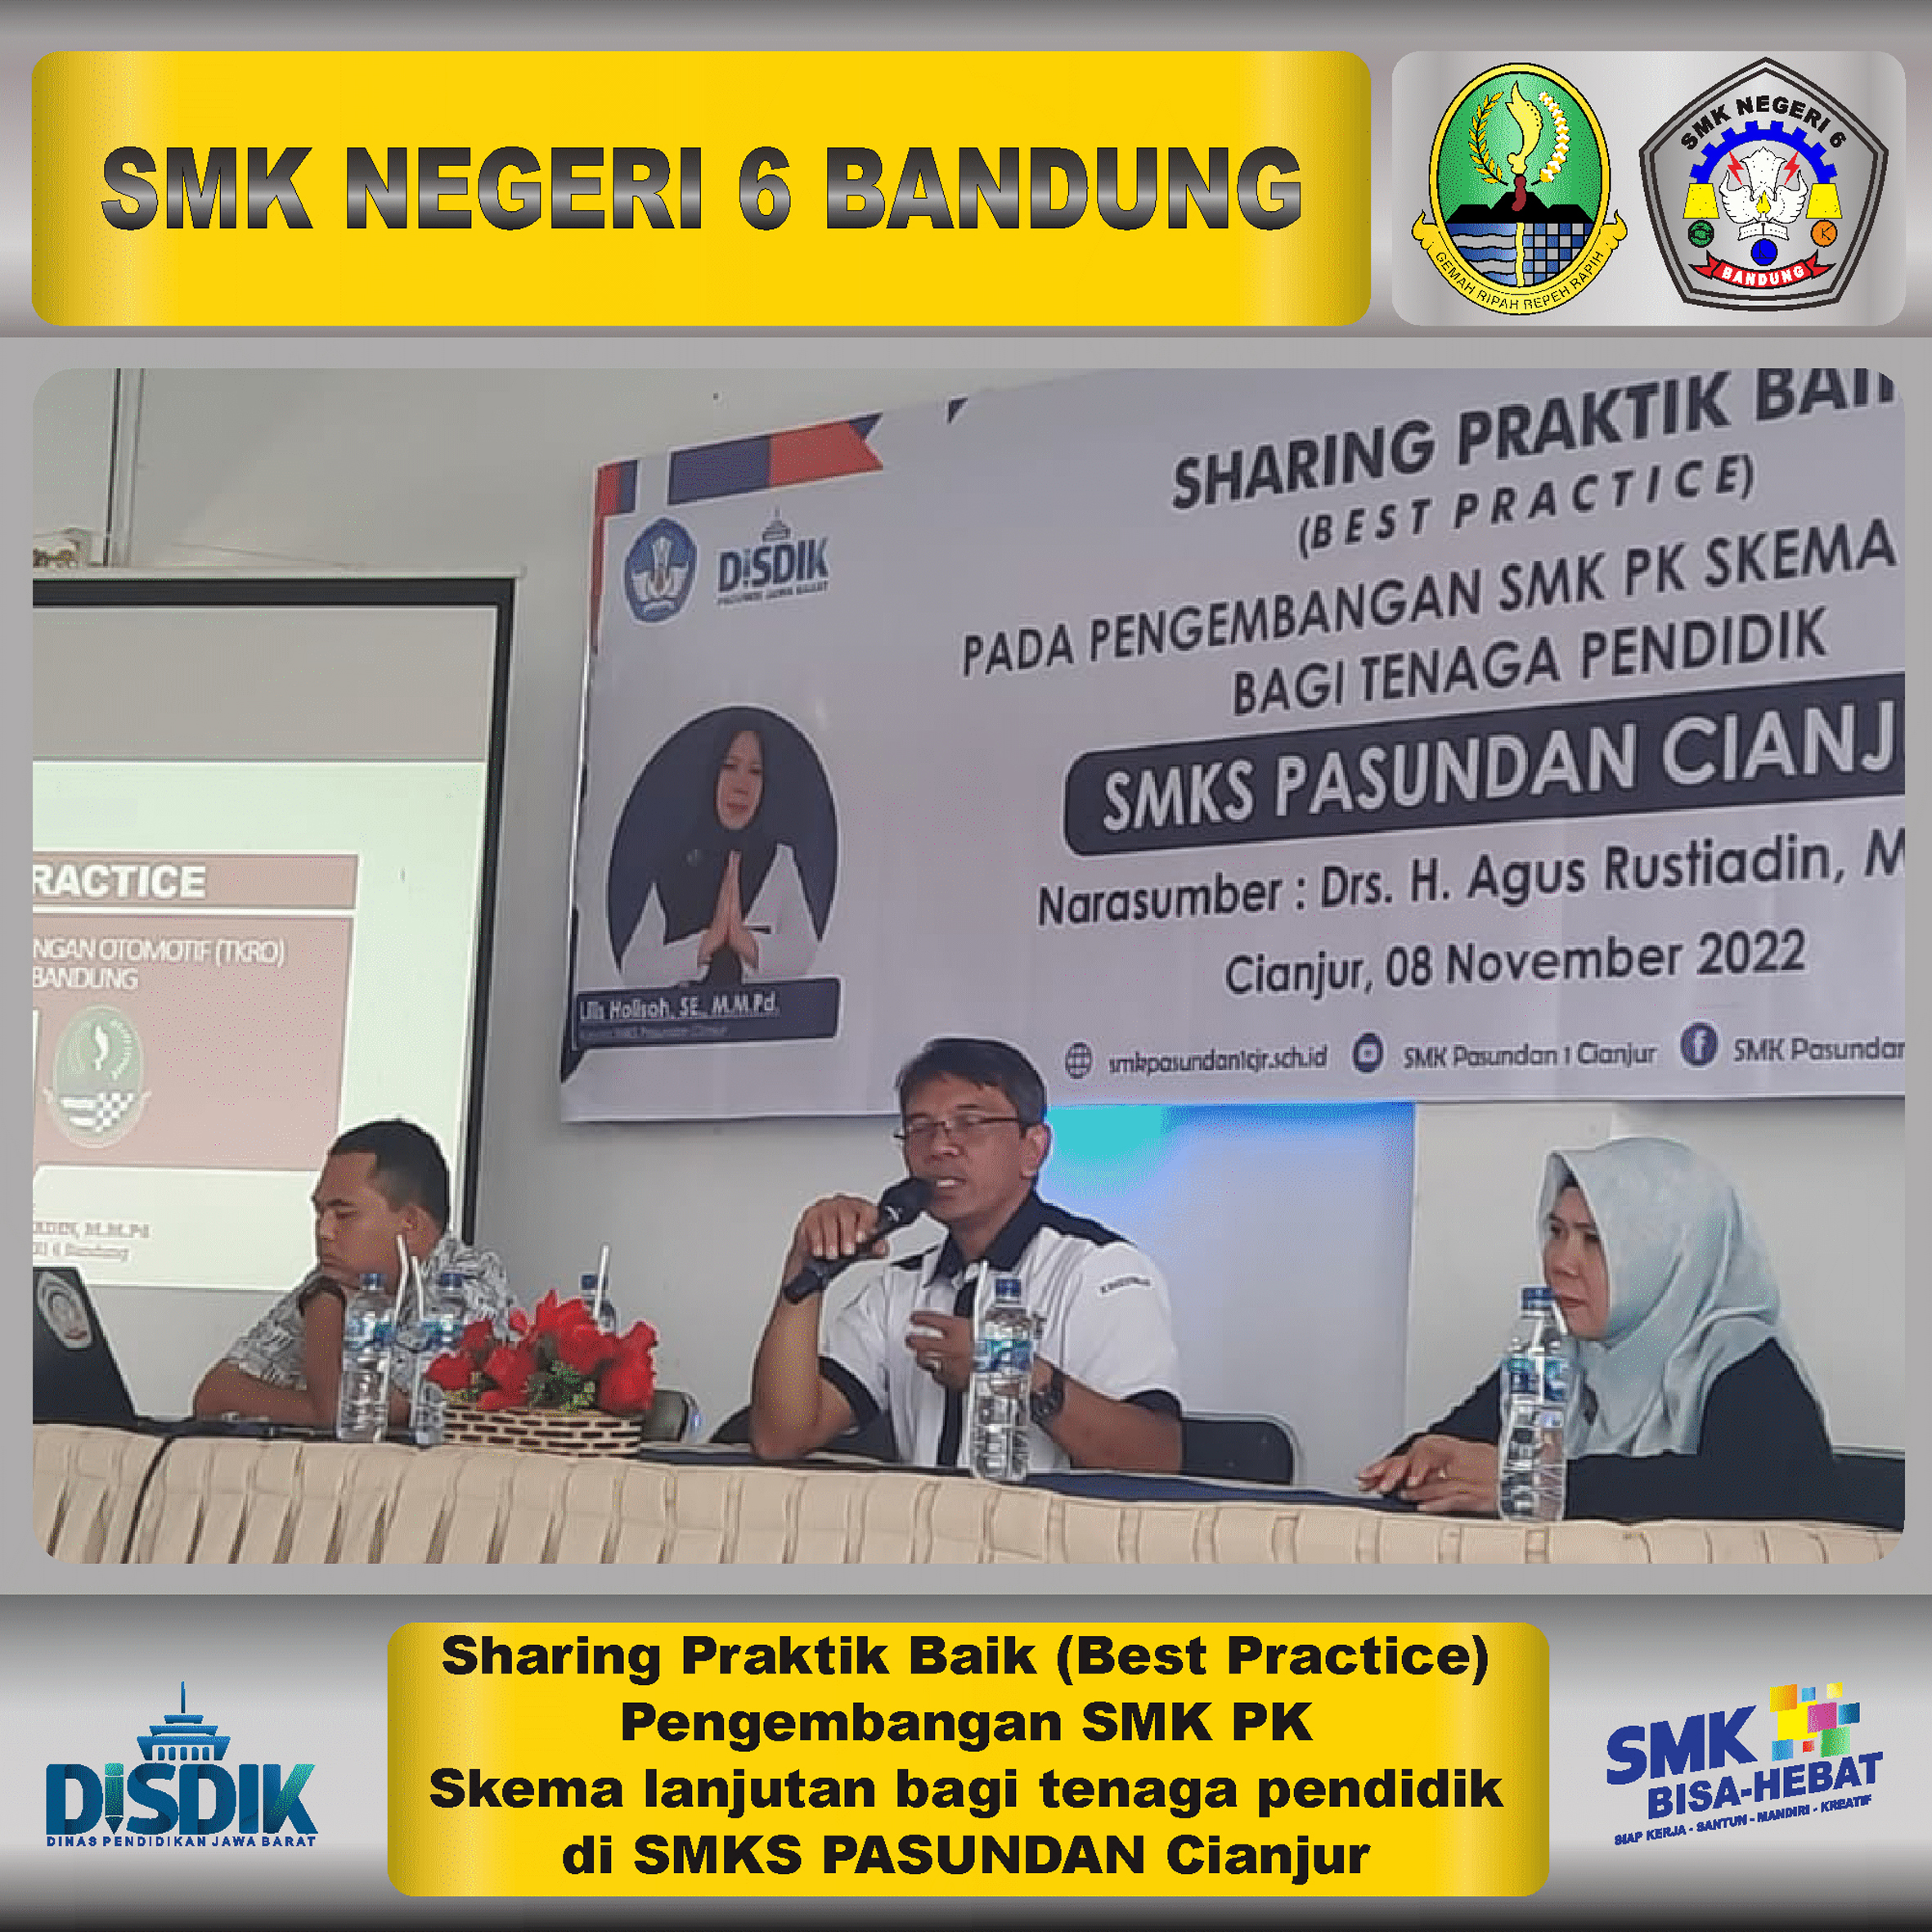 Sharing Praktik Baik (Best Practice) Pengembangan SMK PK Skema lanjutan bagi tenaga pendidik di SMKS PASUNDAN Cianjur